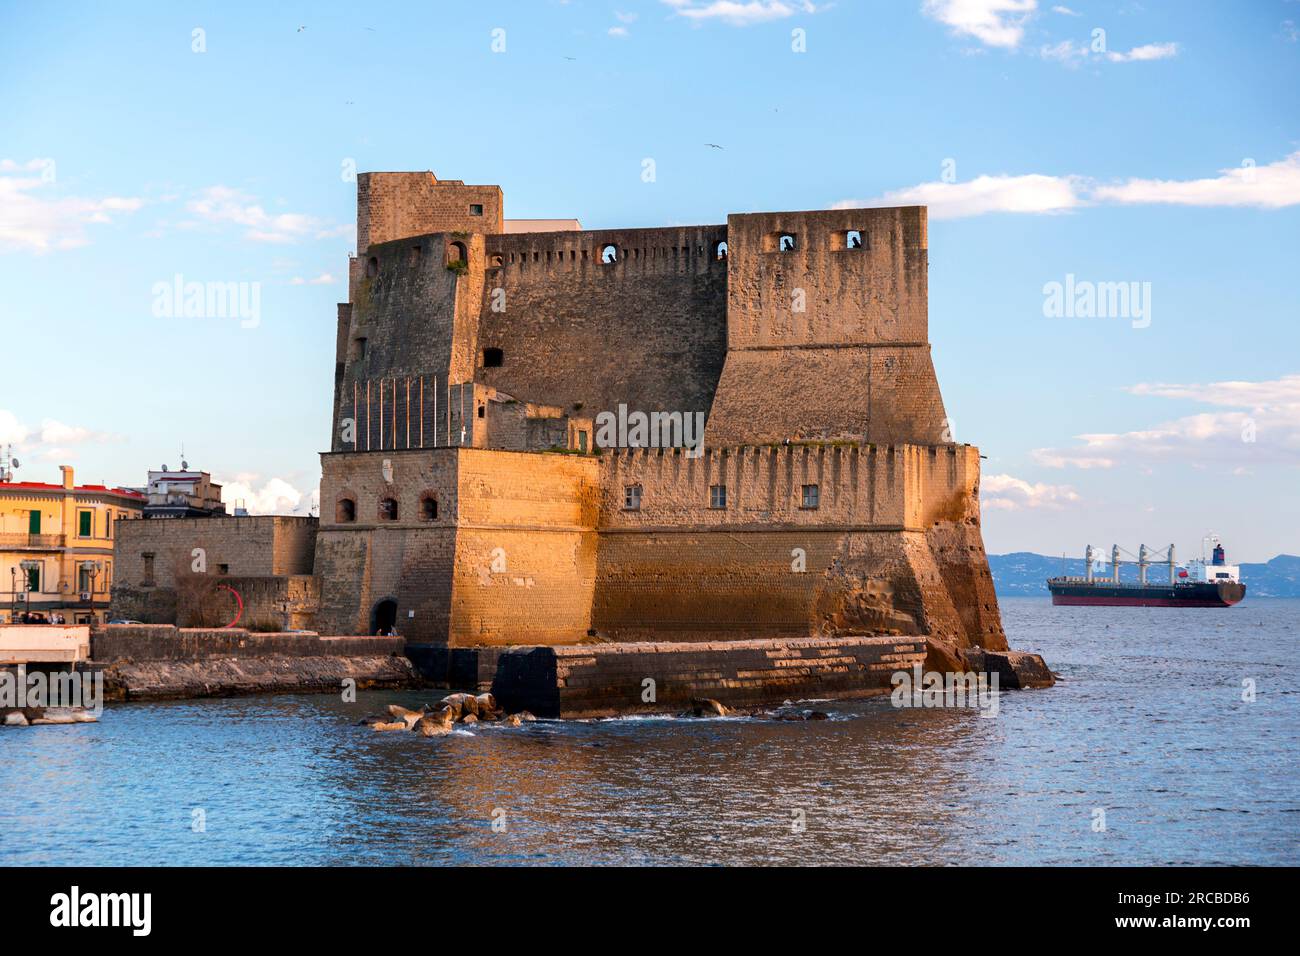 Castel dell'Ovo, Lietrallye, das Egg Castle ist ein Schloss am Meer in Neapel, das sich auf der ehemaligen Insel Megaride, heute eine Halbinsel, am Golf von N befindet Stockfoto